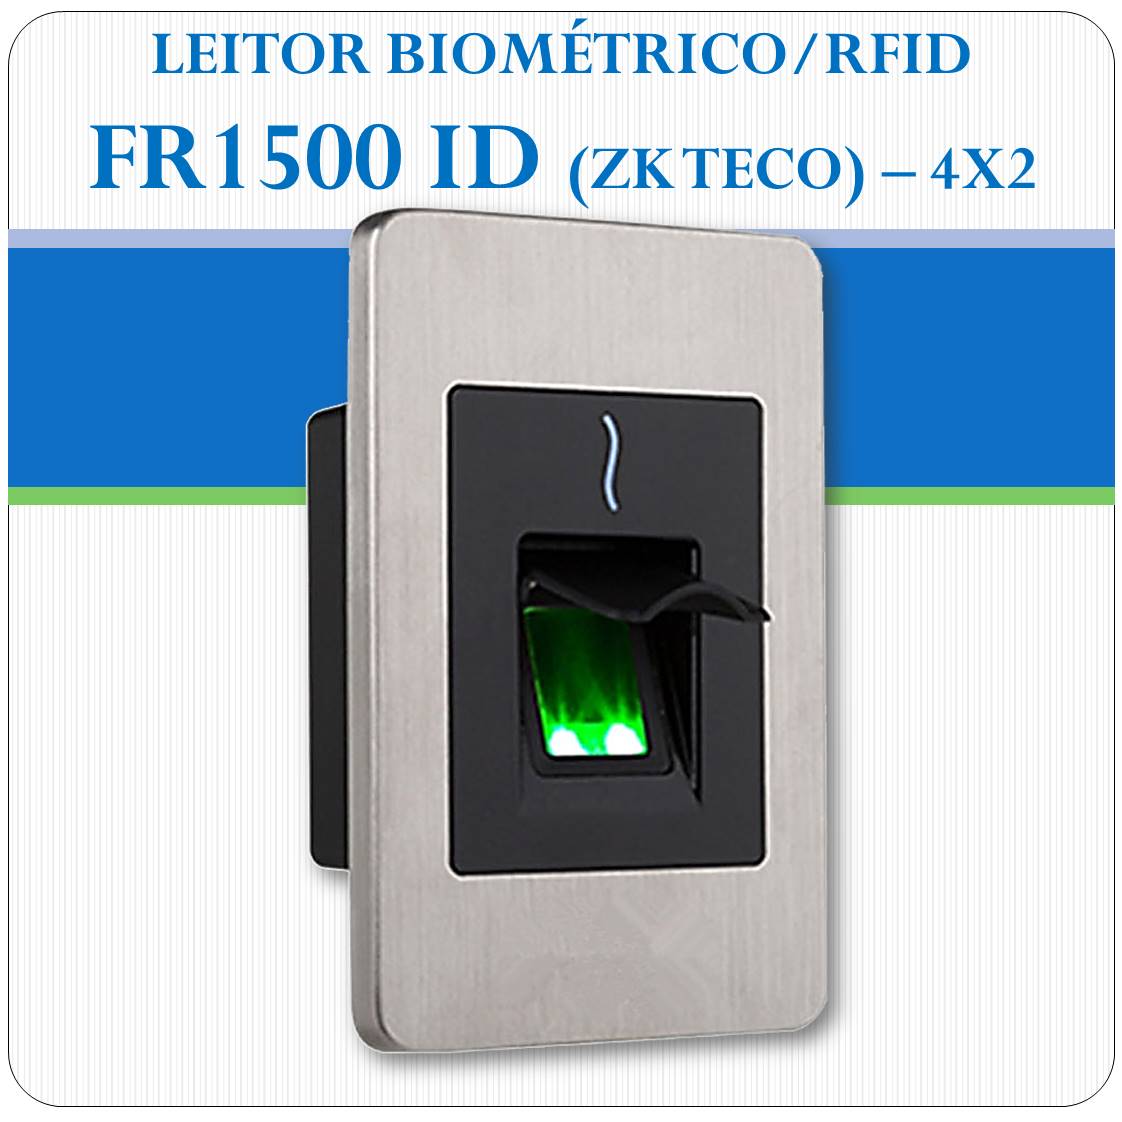 Leitor Biométrico + RFID FR1500 ID (escravo)